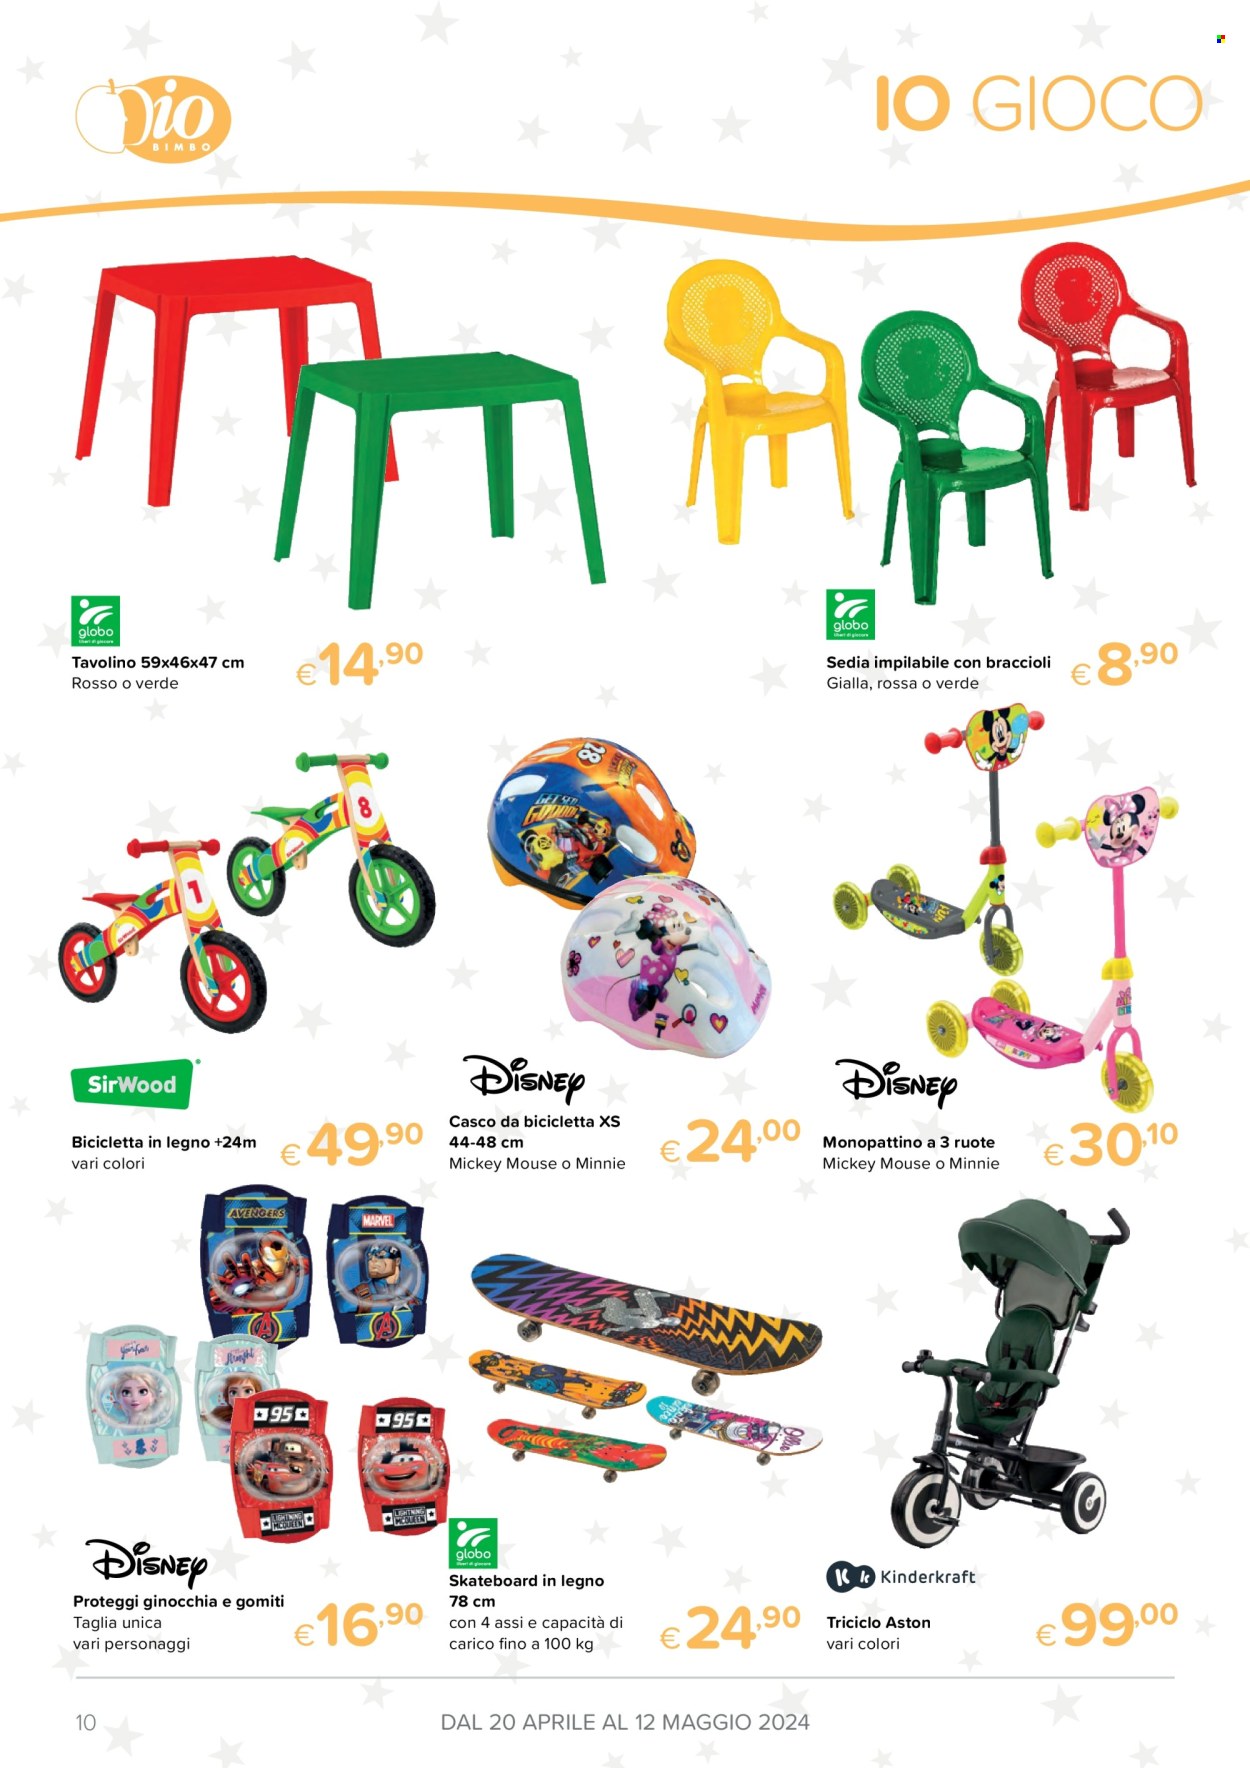 thumbnail - Volantino Io Bimbo - 20/4/2024 - 12/5/2024 - Prodotti in offerta - Disney, McQueen, bicicletta, casco, monopattino, gioco. Pagina 10.